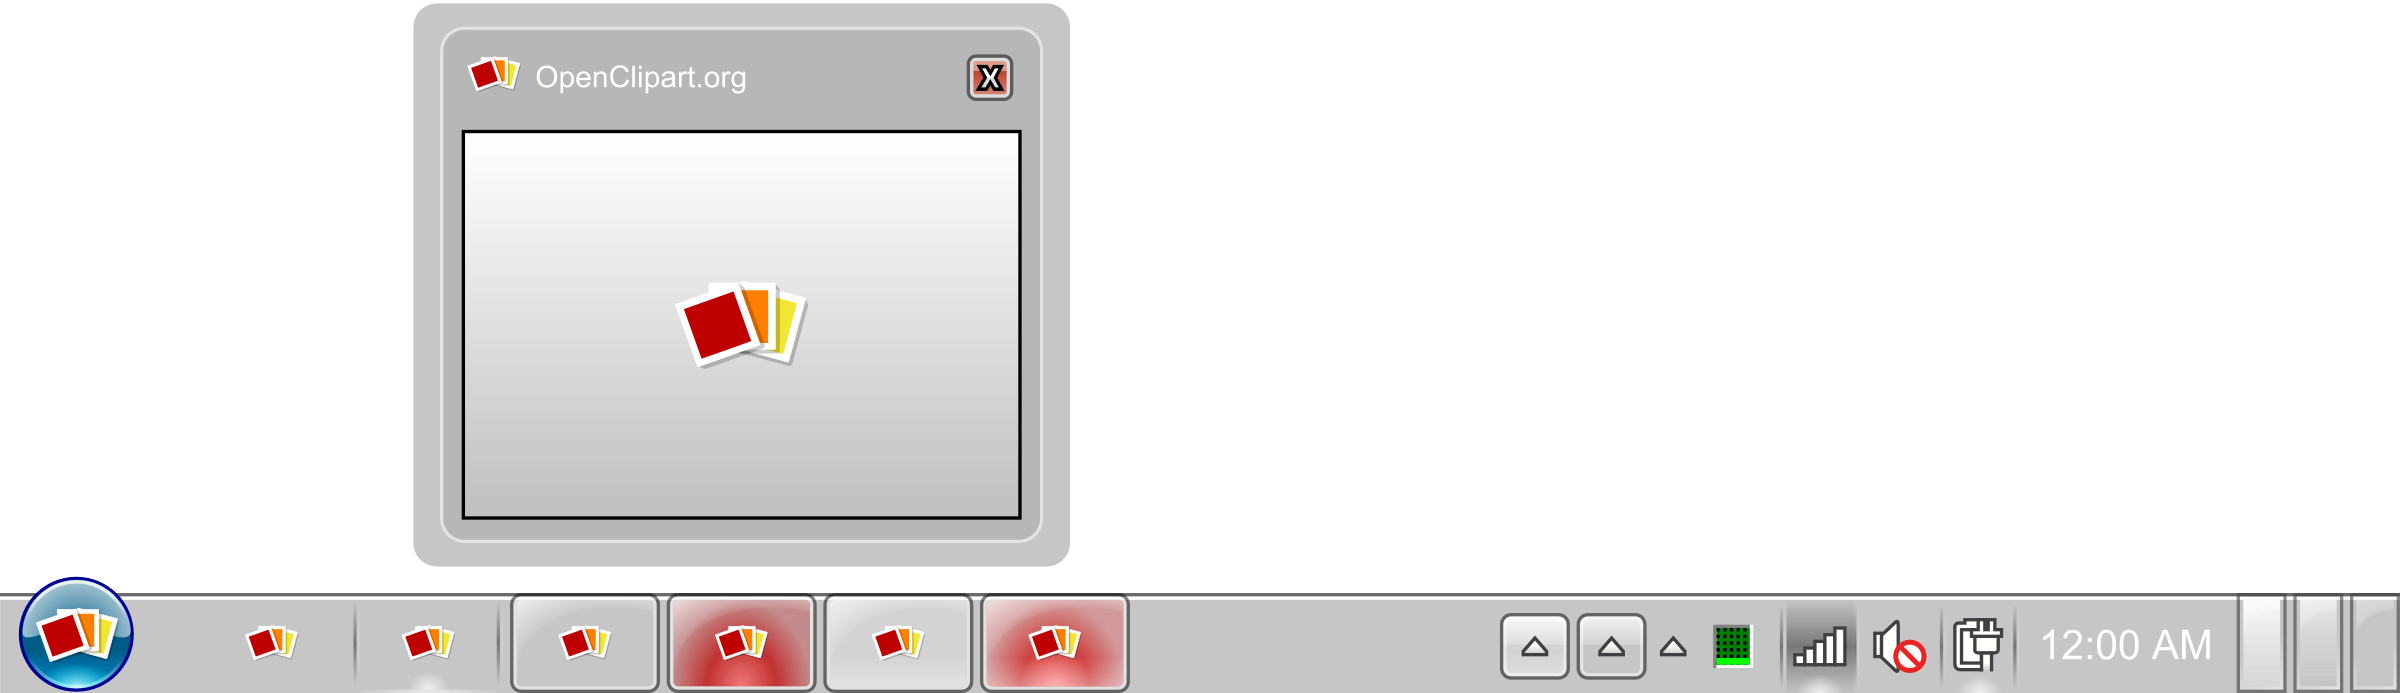 Windows 7 Taskbar SVG Clip arts